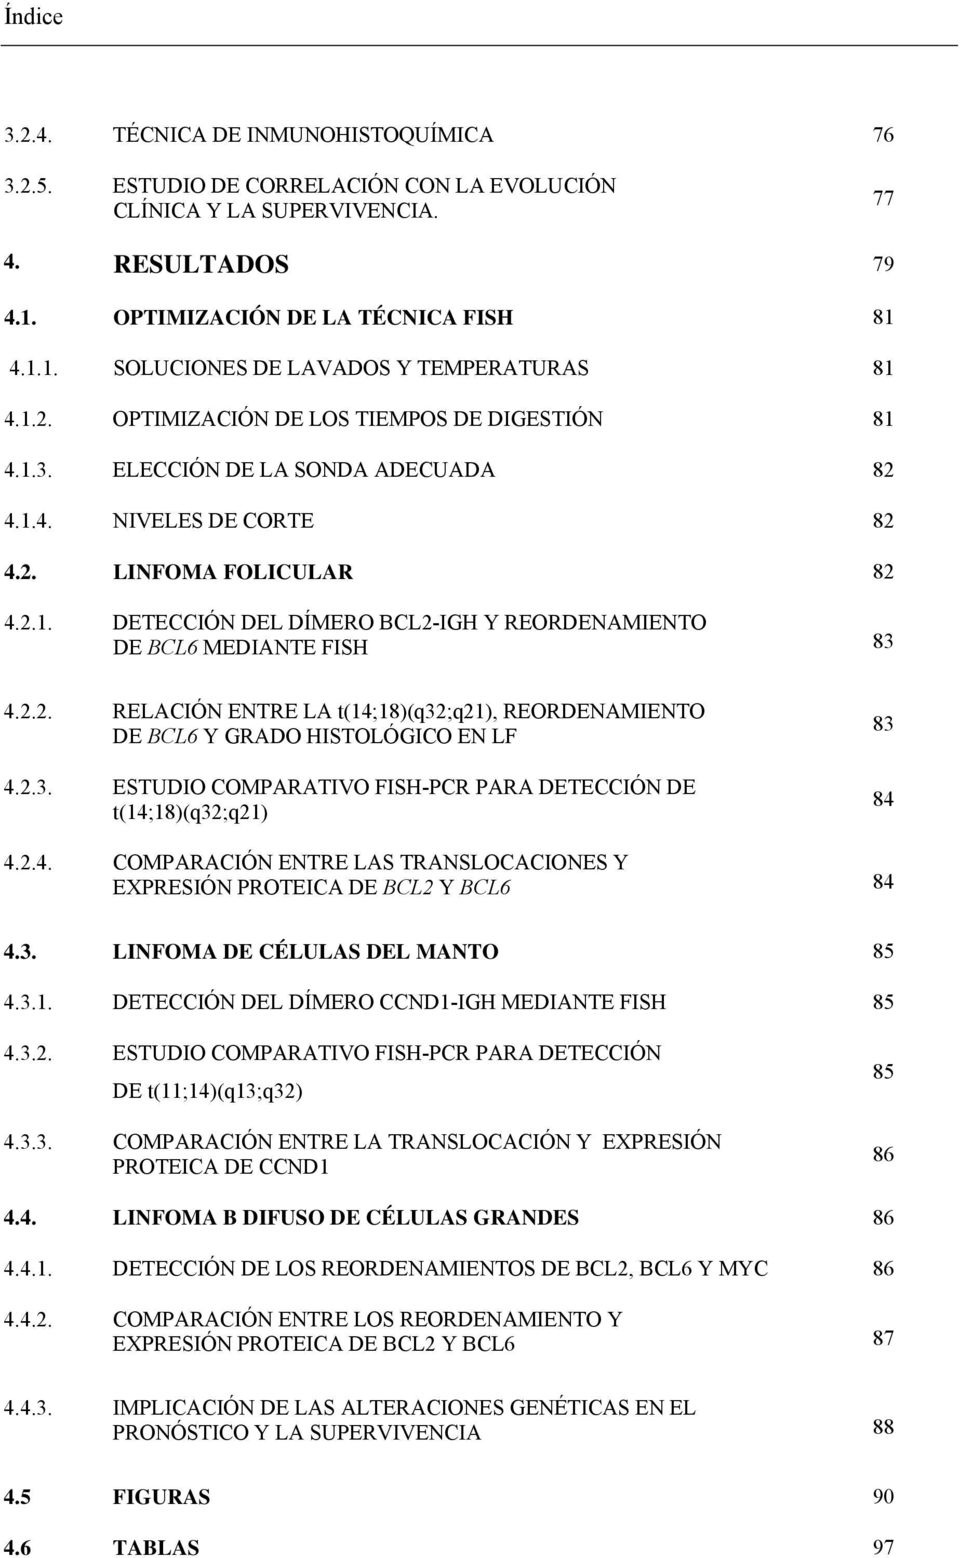 2.2. RELACIÓN ENTRE LA t(14;18)(q32;q21), REORDENAMIENTO DE BCL6 Y GRADO HISTOLÓGICO EN LF 4.2.3. ESTUDIO COMPARATIVO FISH-PCR PARA DETECCIÓN DE t(14;18)(q32;q21) 83 84 4.2.4. COMPARACIÓN ENTRE LAS TRANSLOCACIONES Y EXPRESIÓN PROTEICA DE BCL2 Y BCL6 84 4.